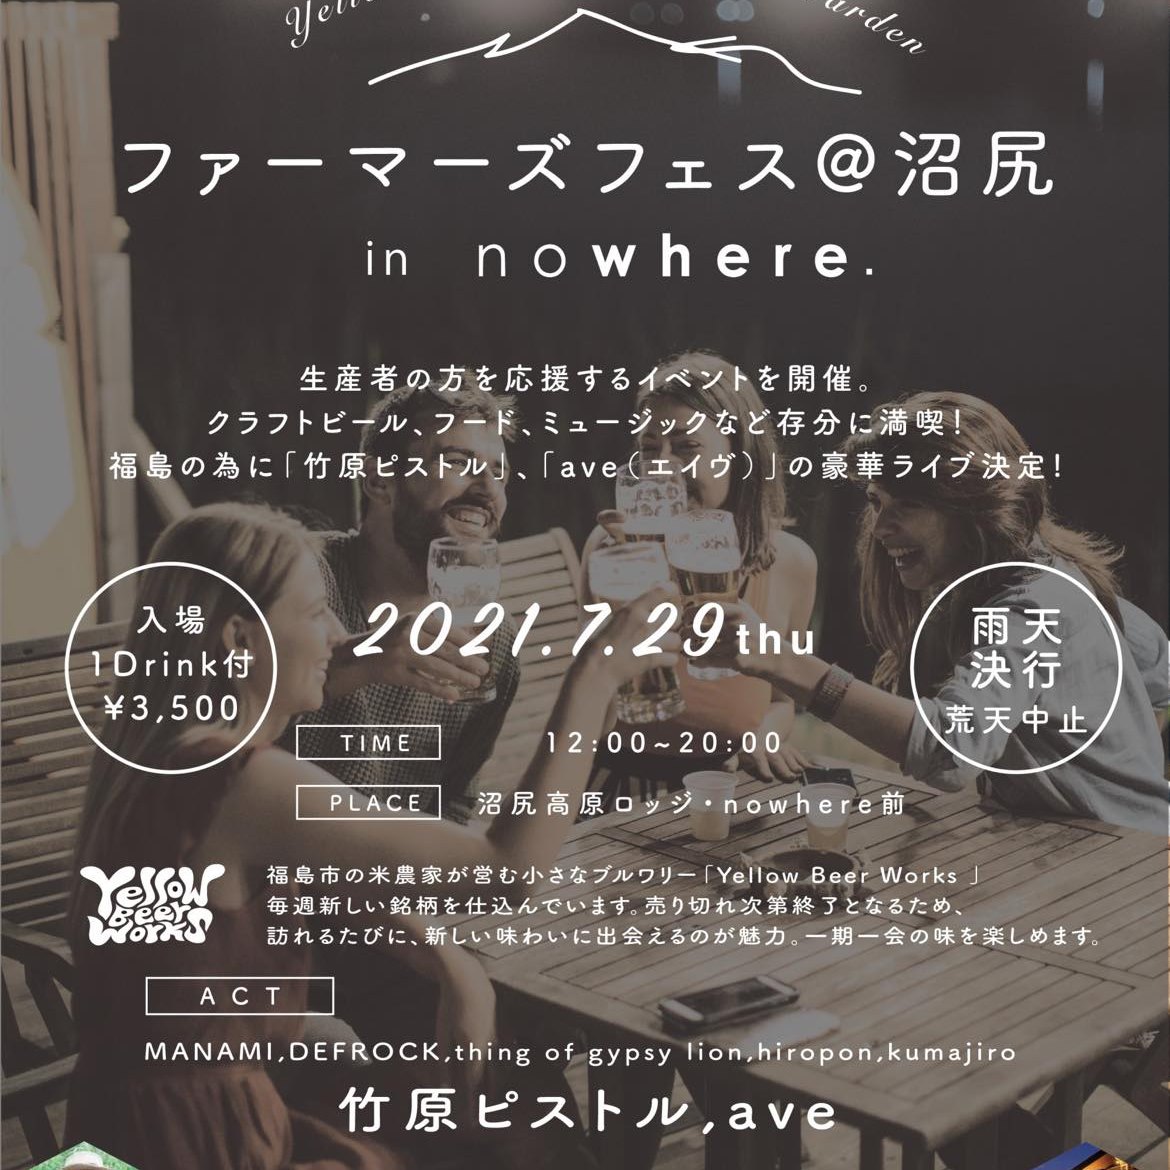 沼尻・中ノ沢温泉にて音楽イベントが開催されます！